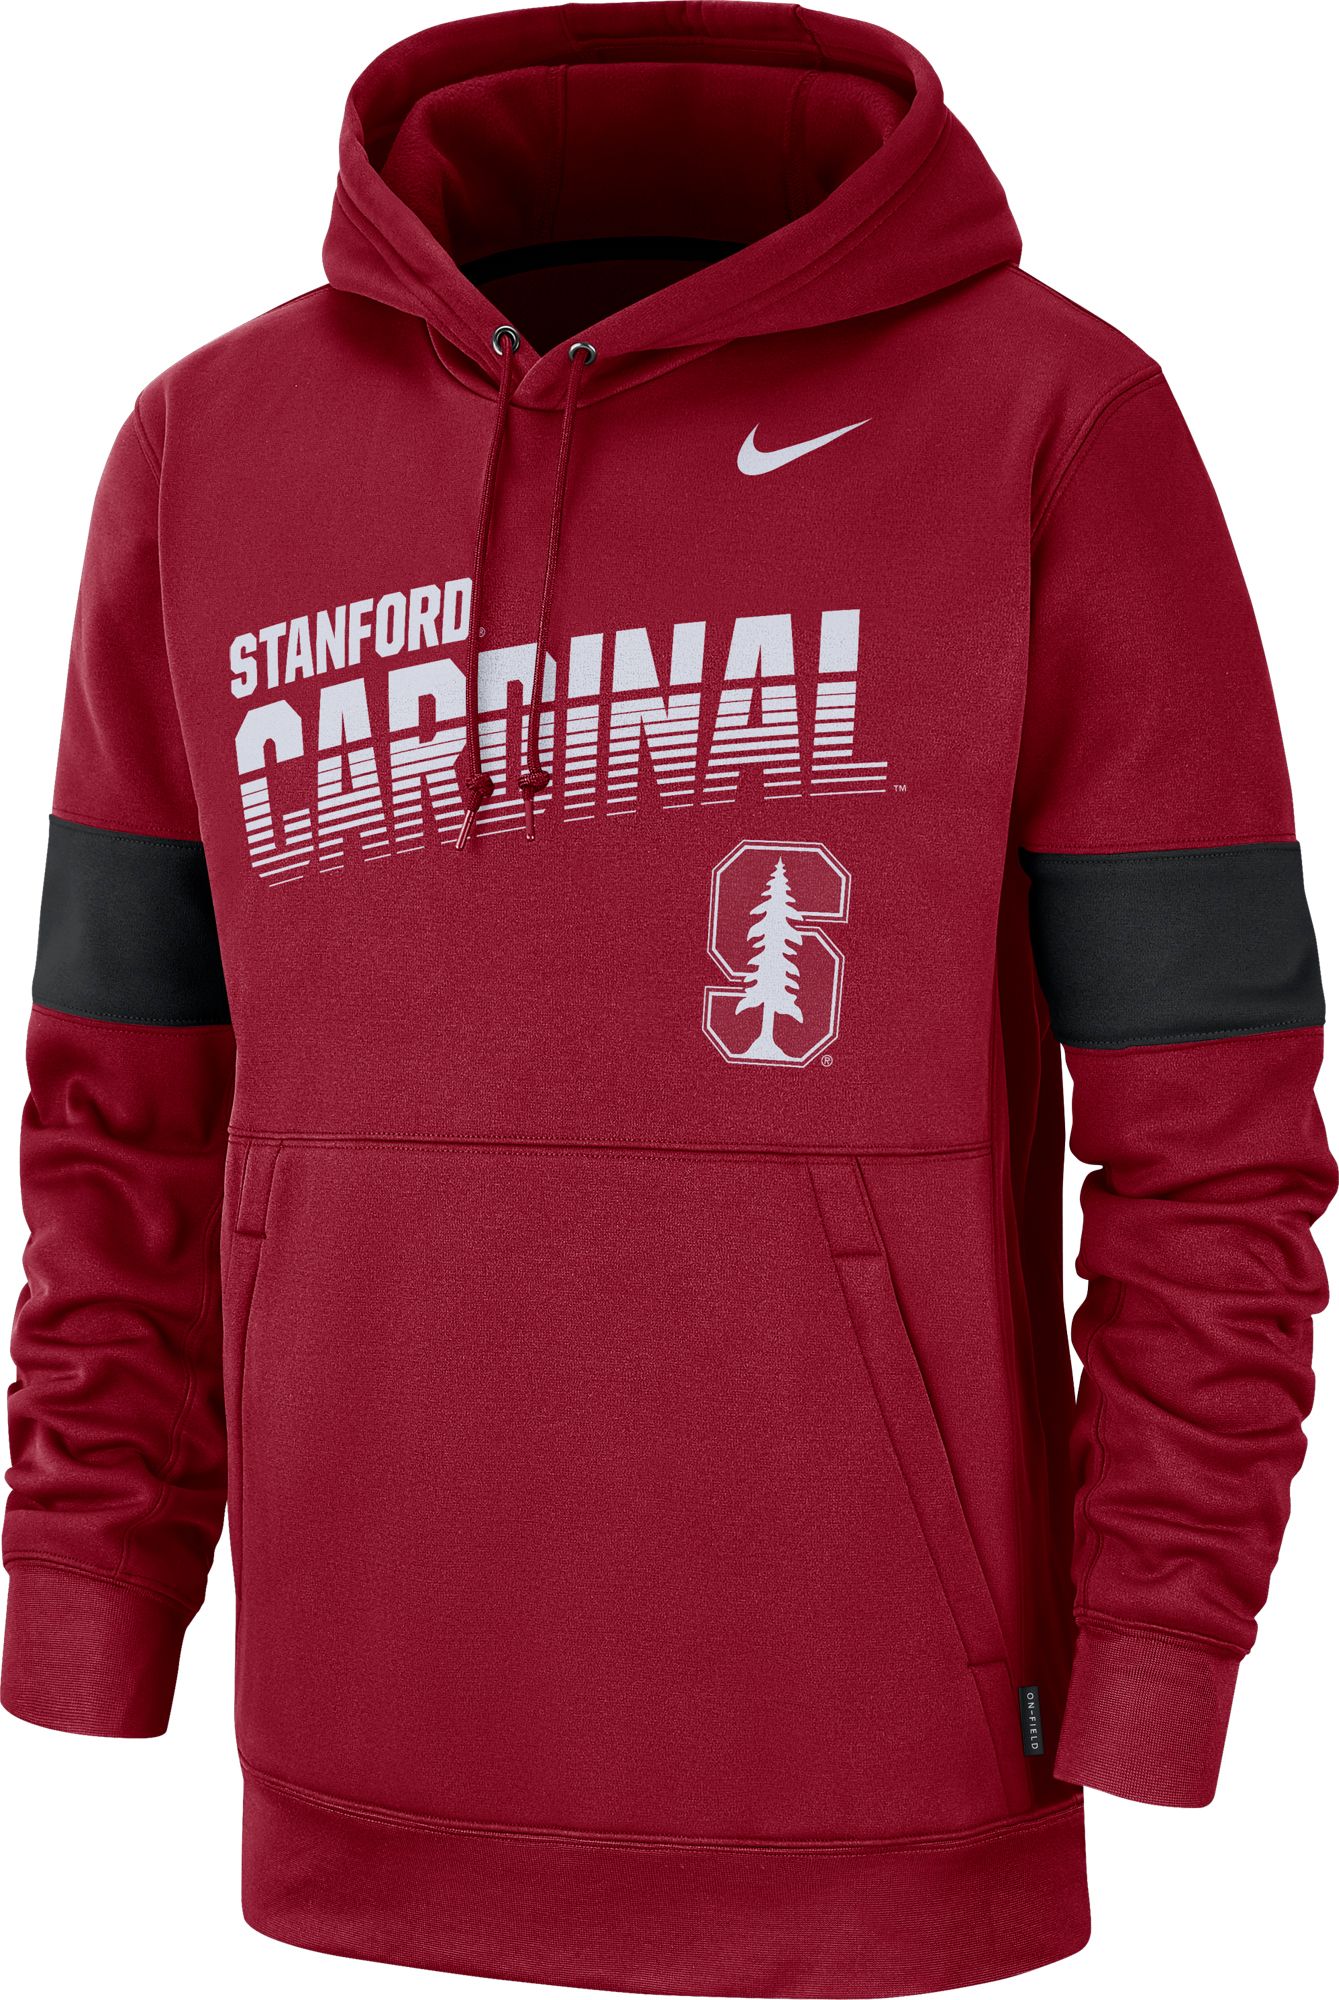 Nike Men's Stanford Cardinal Therma 